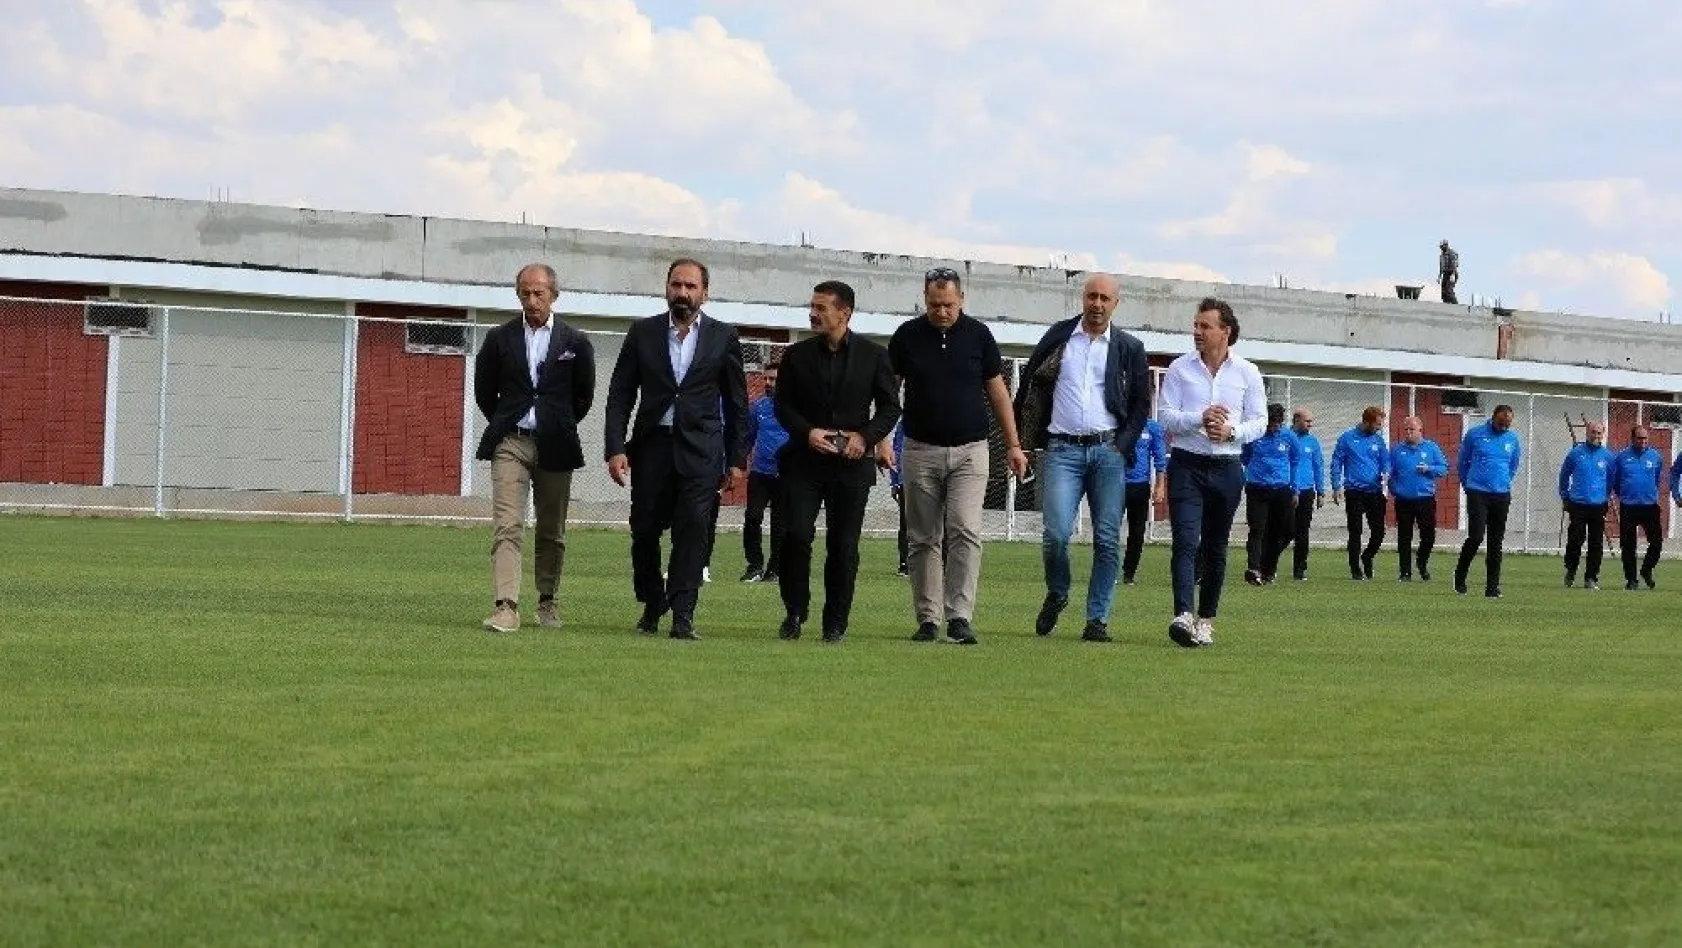 TFF Futbol Gelişim Direktörü Kafkas, Sivasspor'un alt yapı tesislerini gezdi
